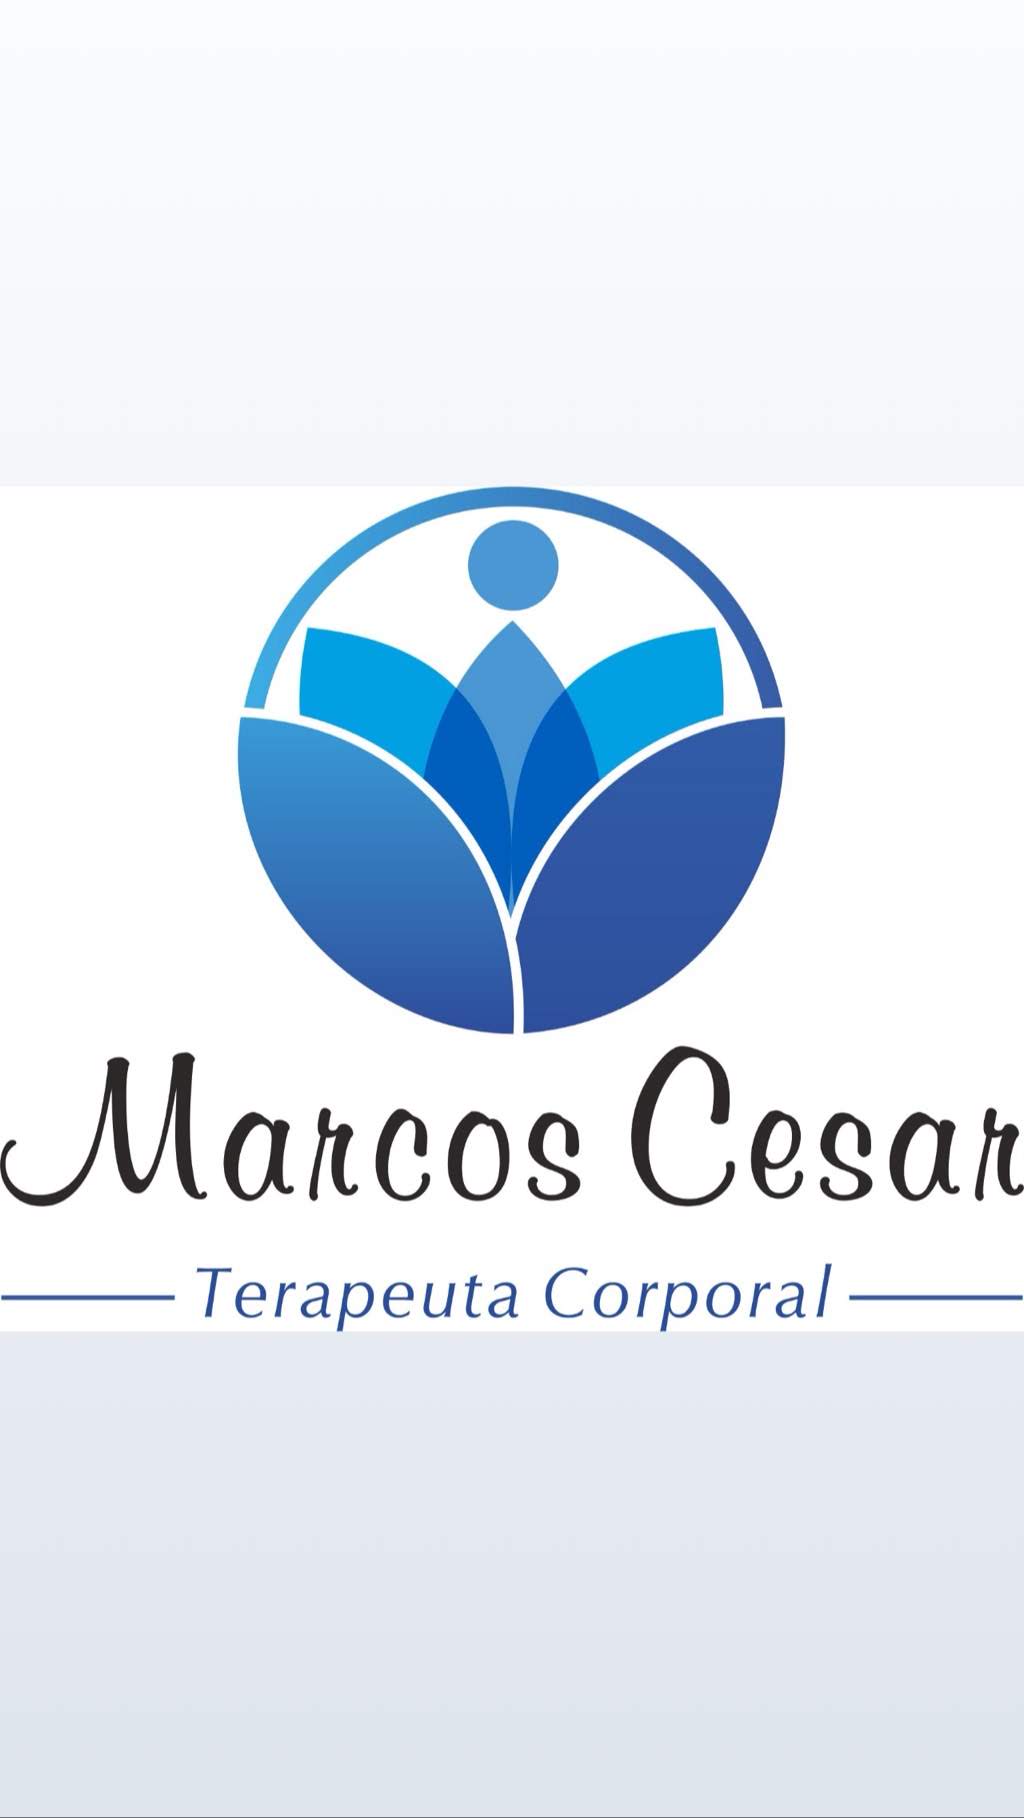 Marcos Barros - terapeuta corporal e holístico 